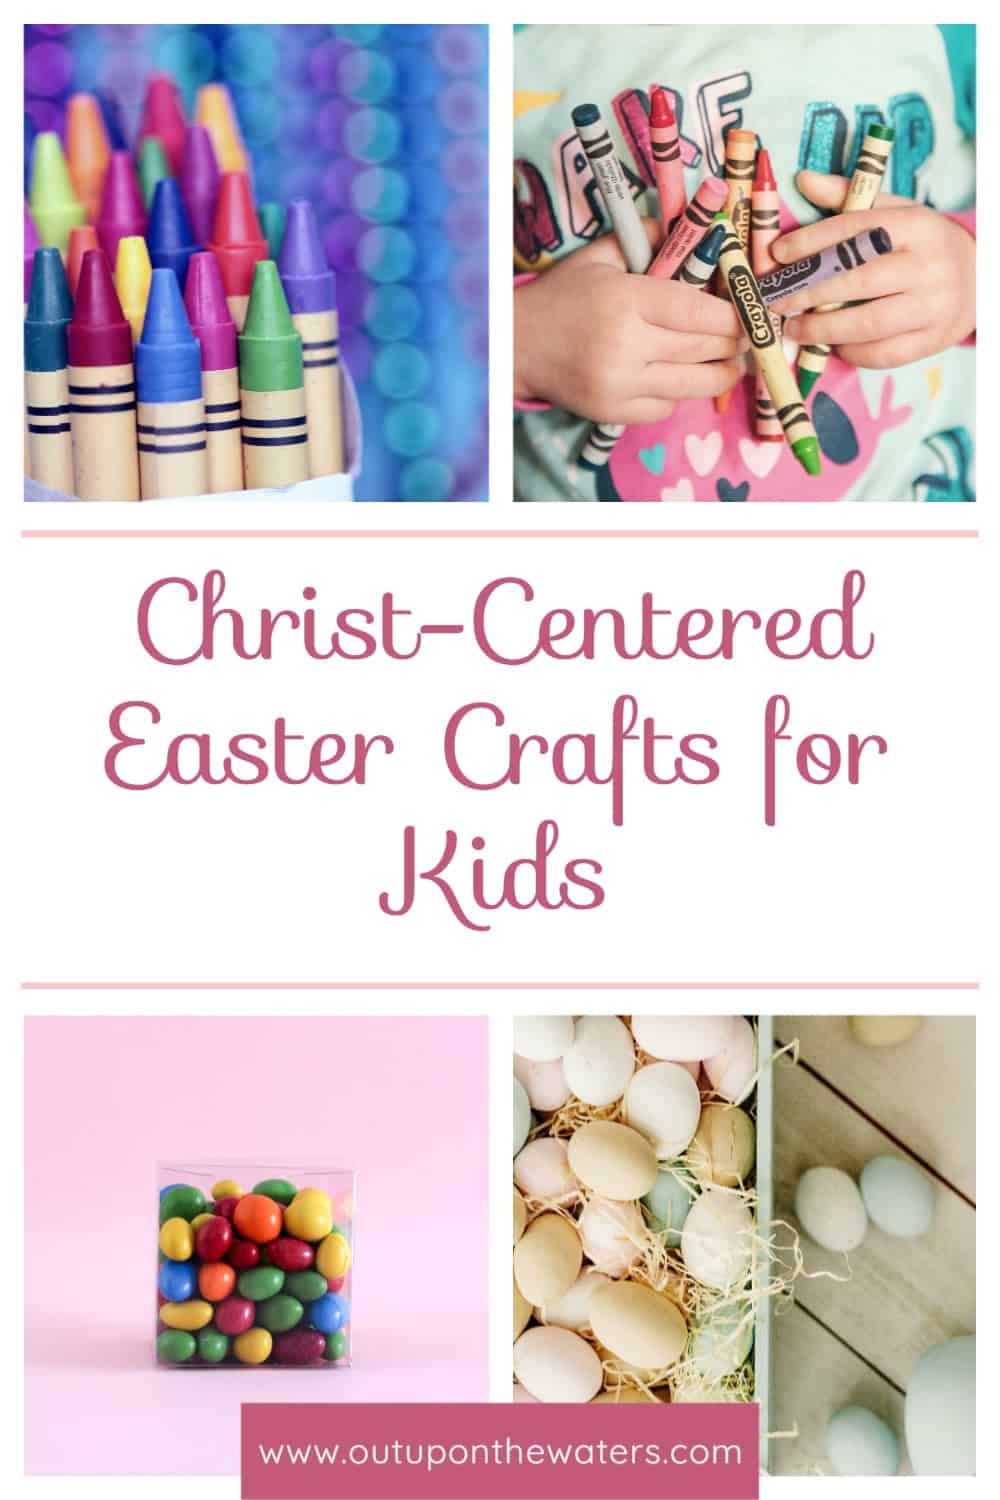 Christ-centered Easter crafts for kids